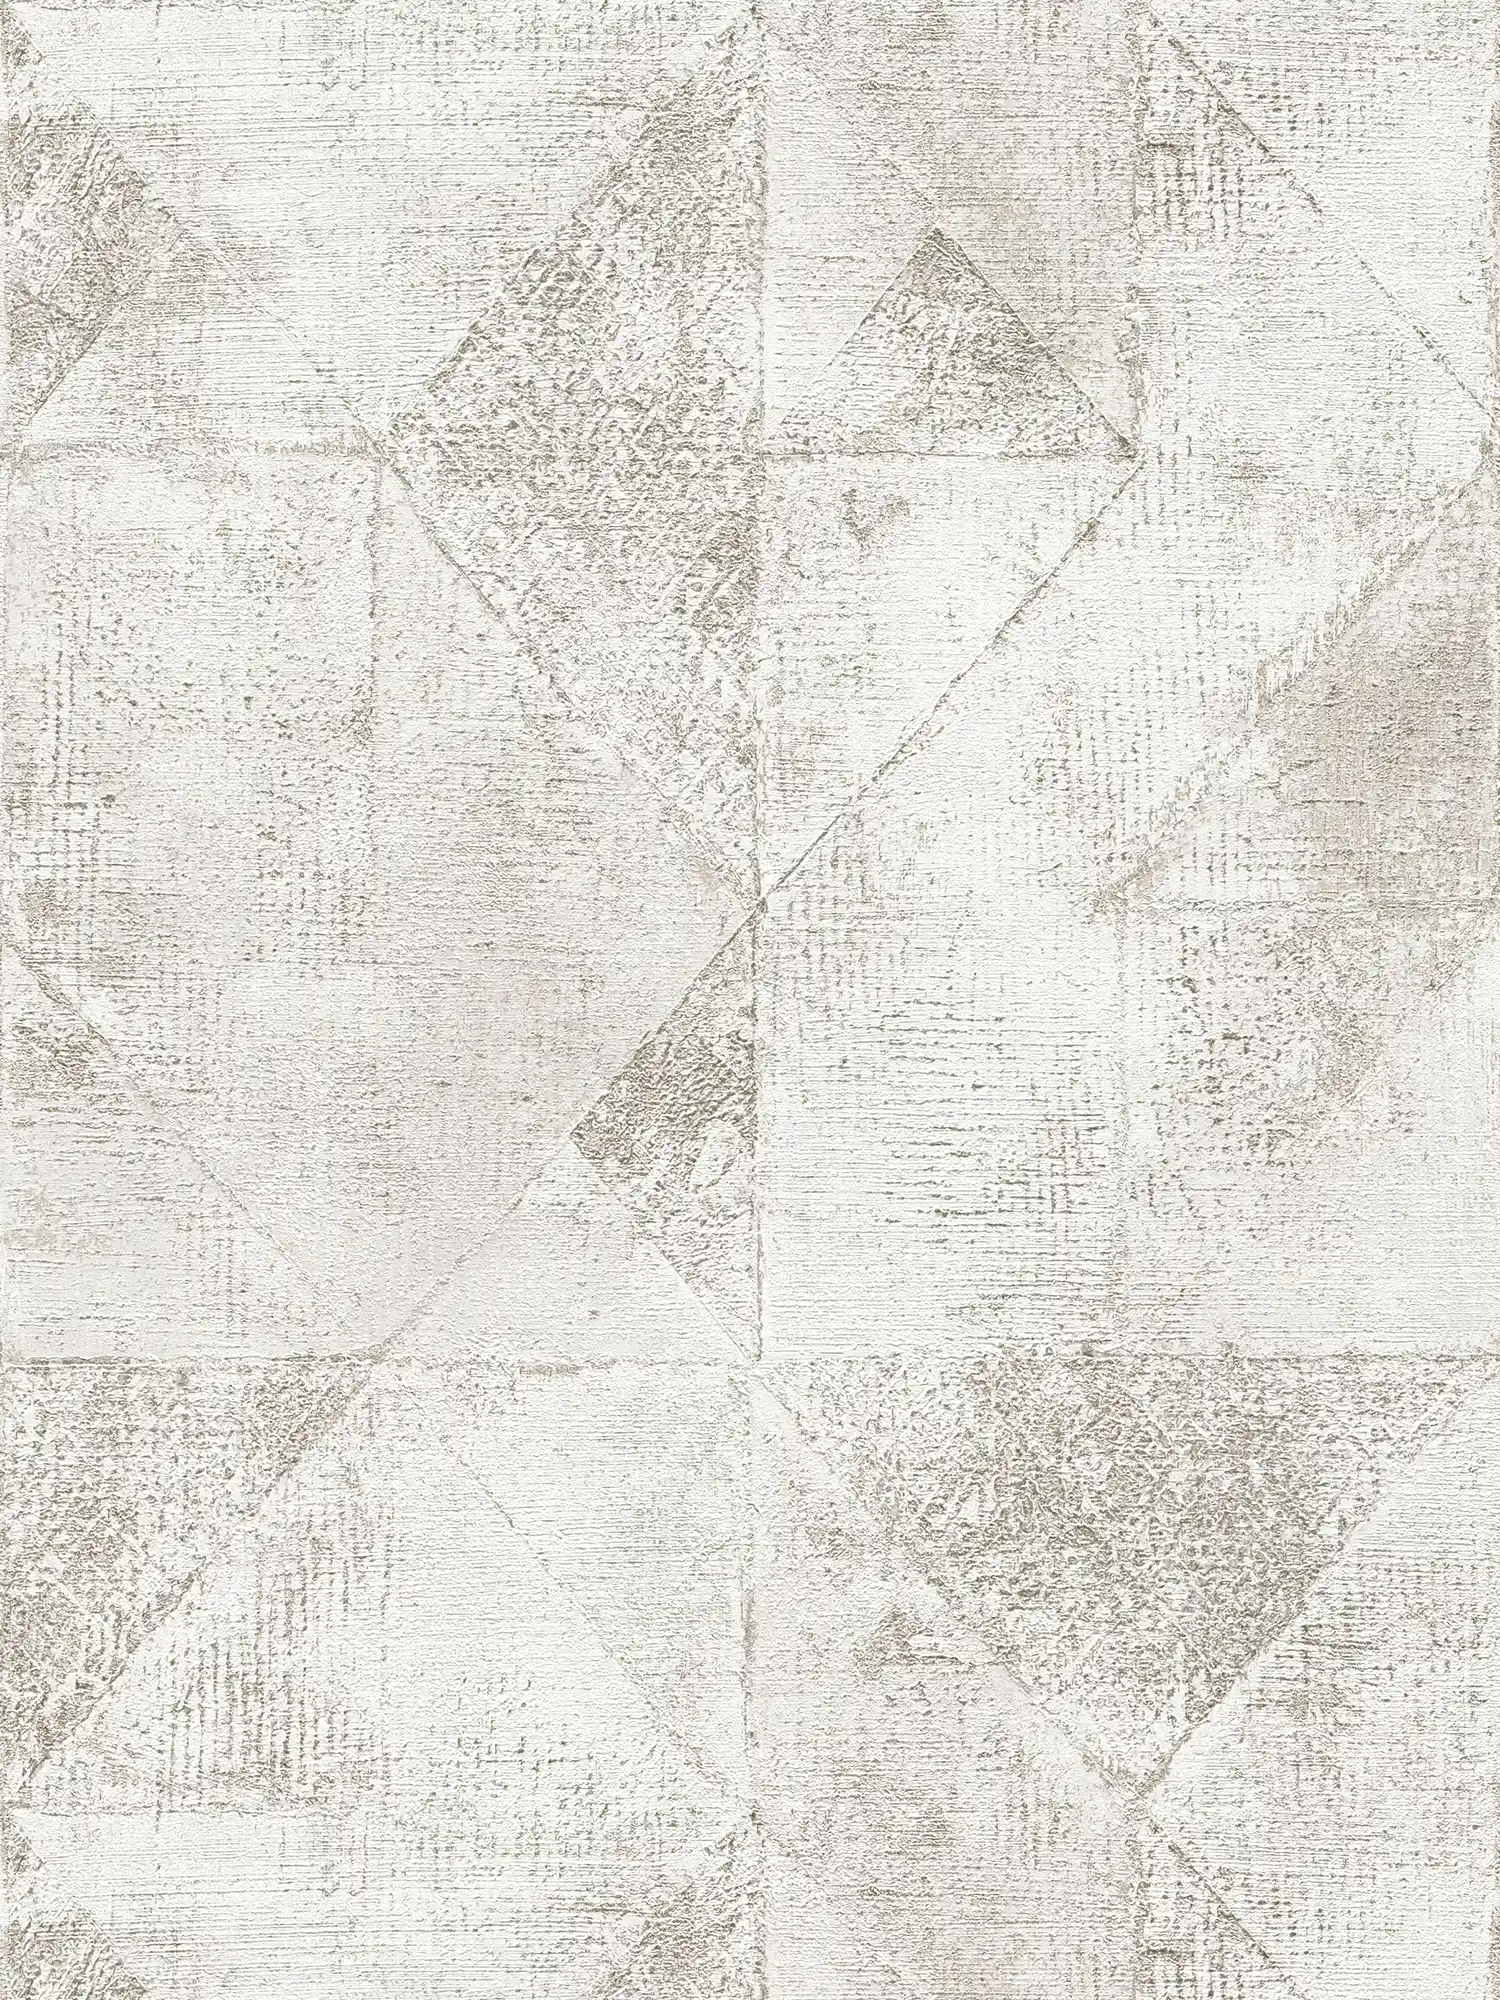 Tapete mit Grafik metallic Dreieck-Muster glänzend strukturiert – Silber, Weiß
